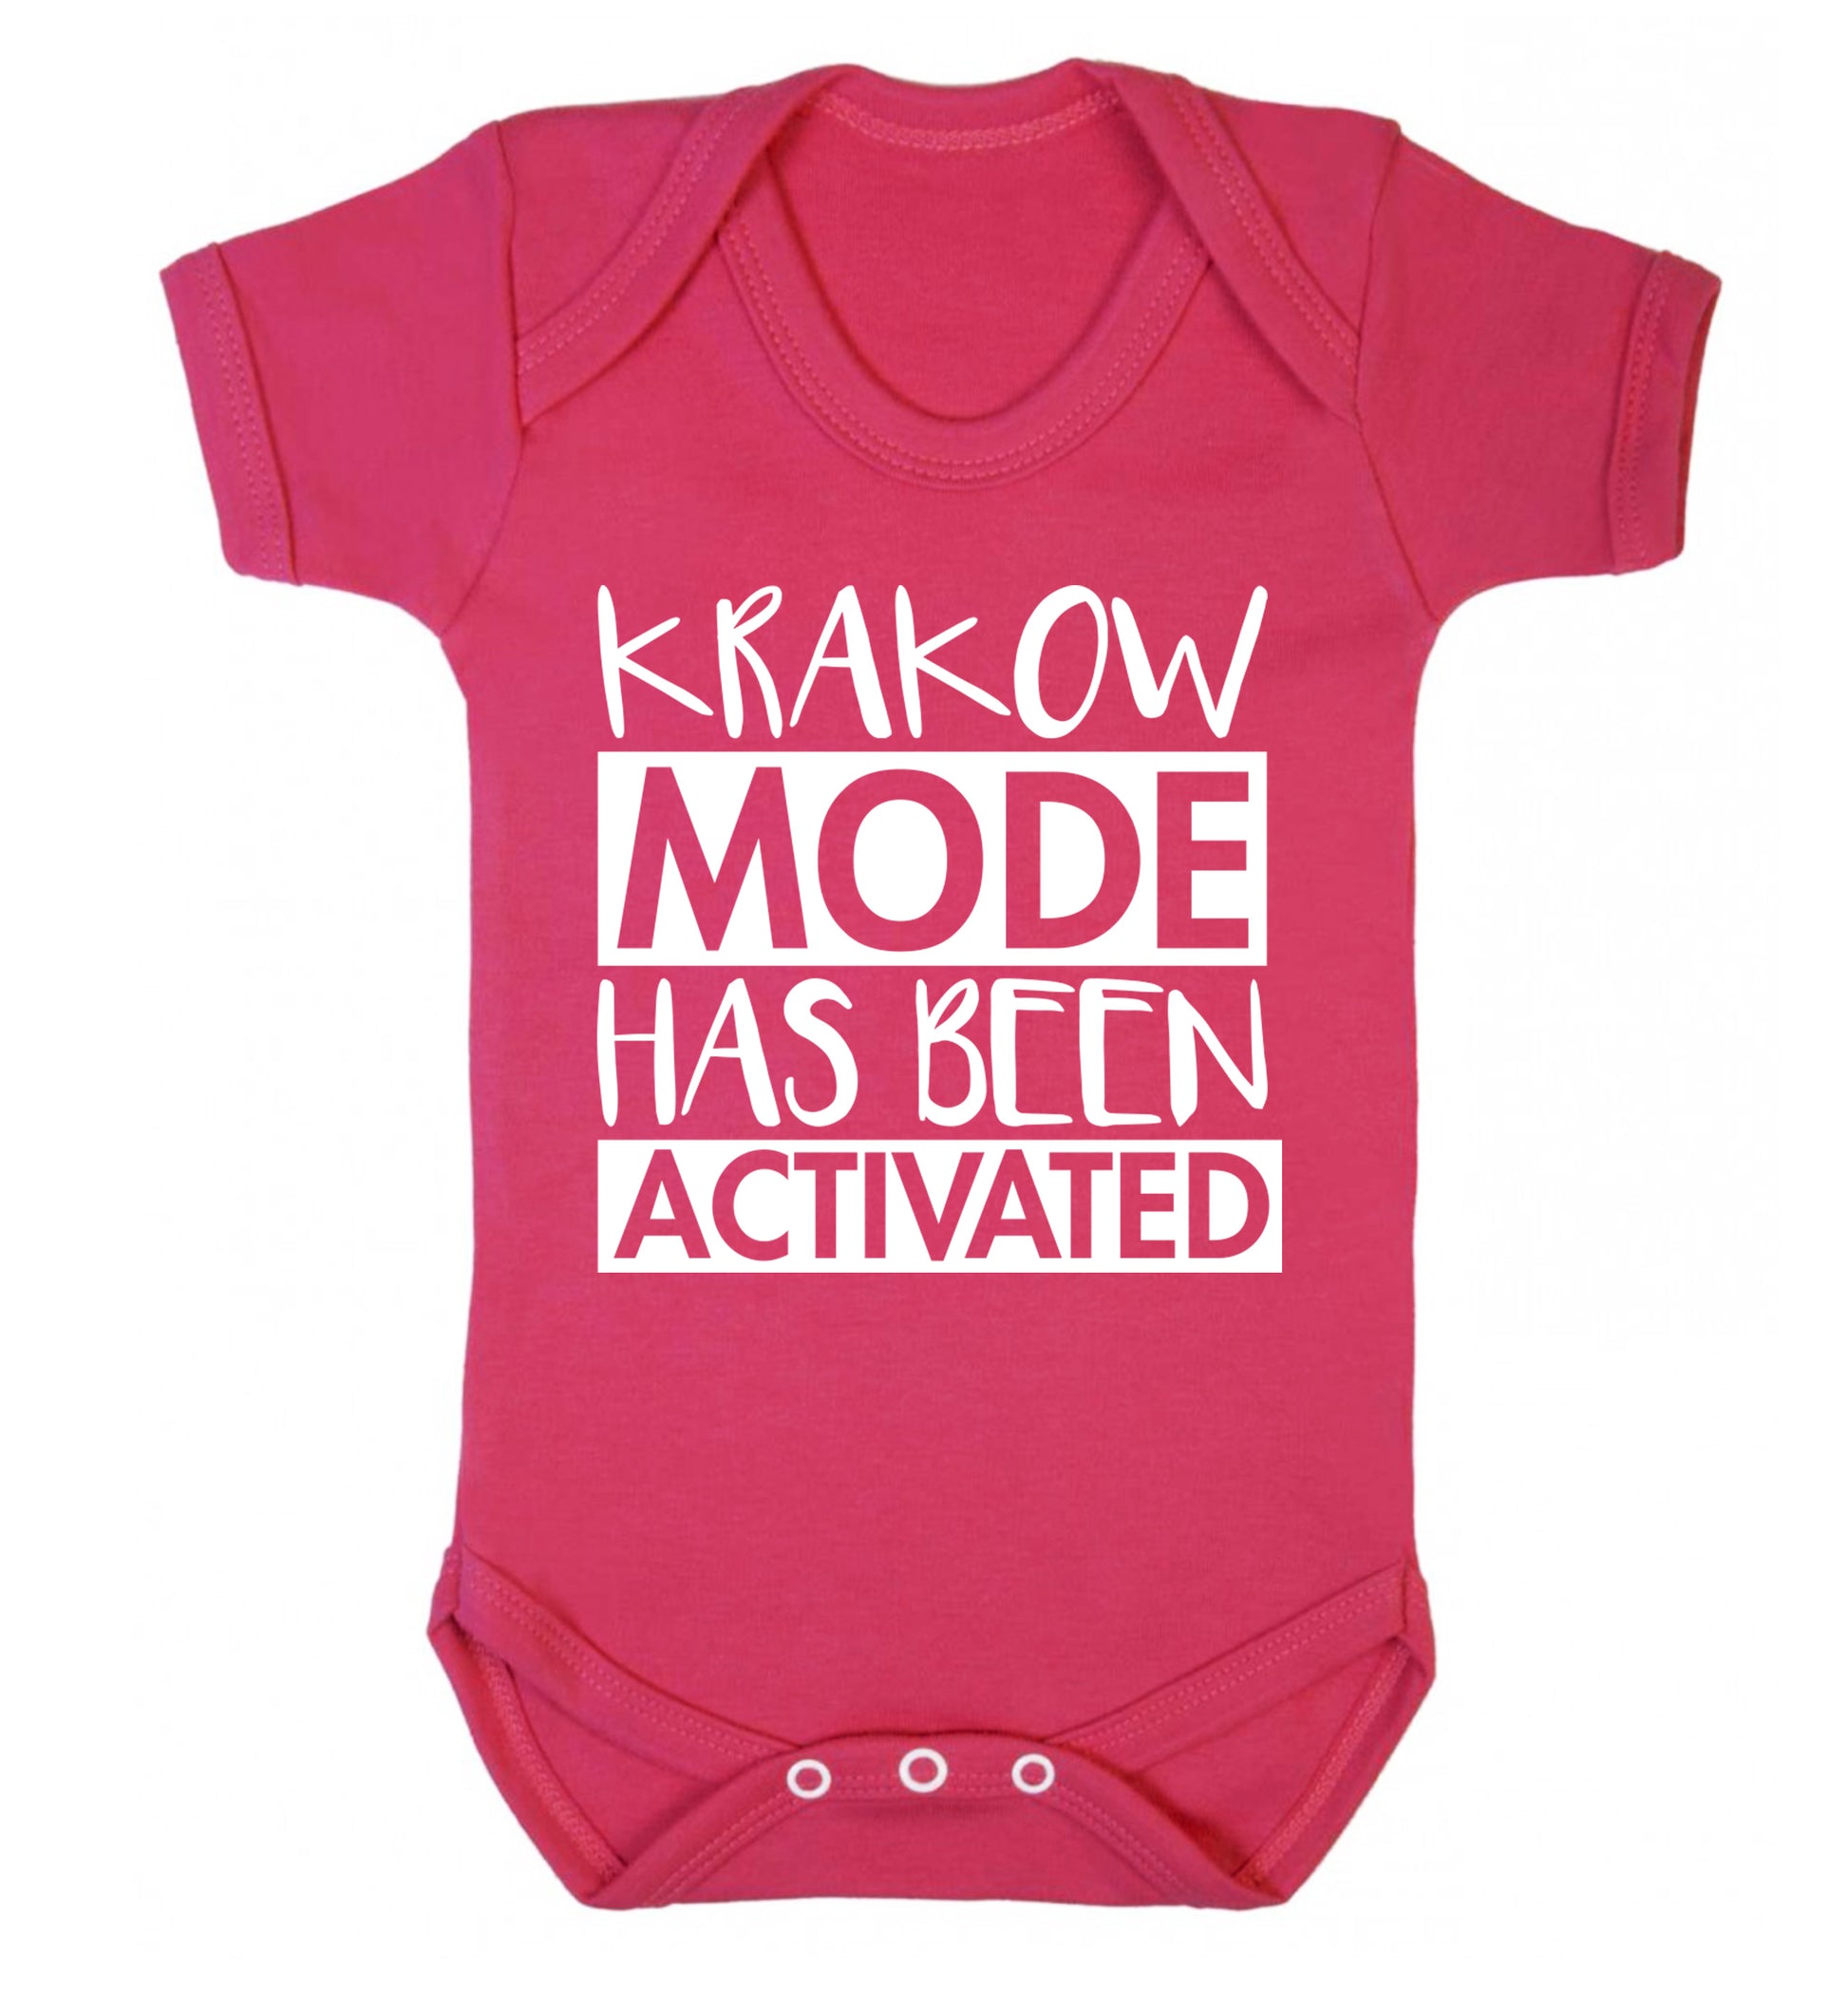 Krakow mode has been activated Baby Vest dark pink 18-24 months